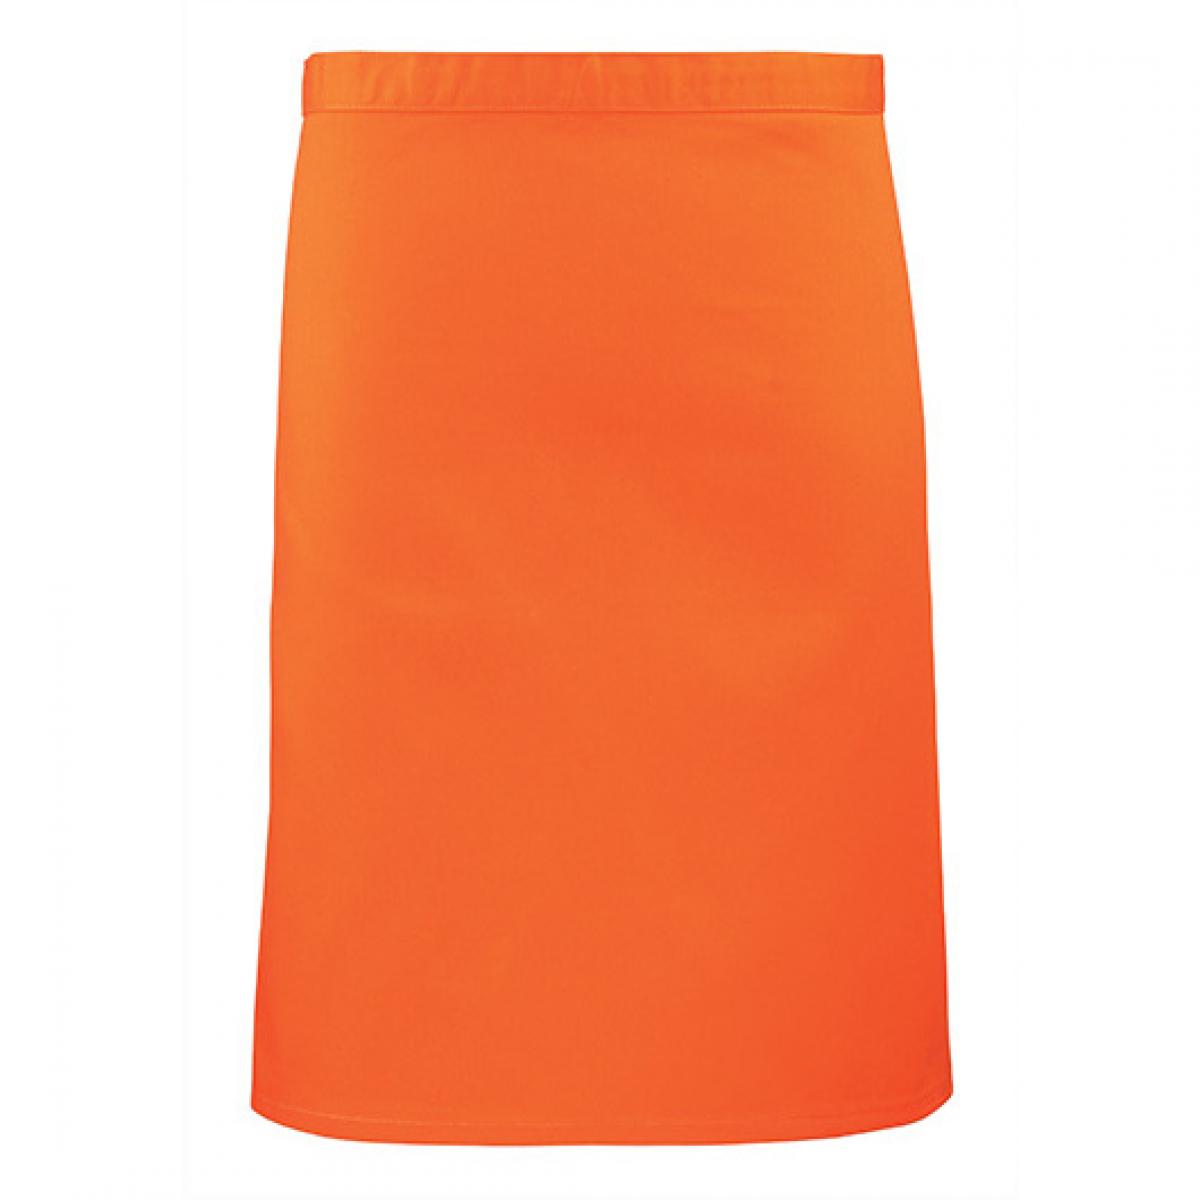 Hersteller: Premier Workwear Herstellernummer: PR151 Artikelbezeichnung: Bistroschürze - 70 x 50 cm - Hauswäsche: bis 60 °C Farbe: Orange (ca. Pantone 1655)